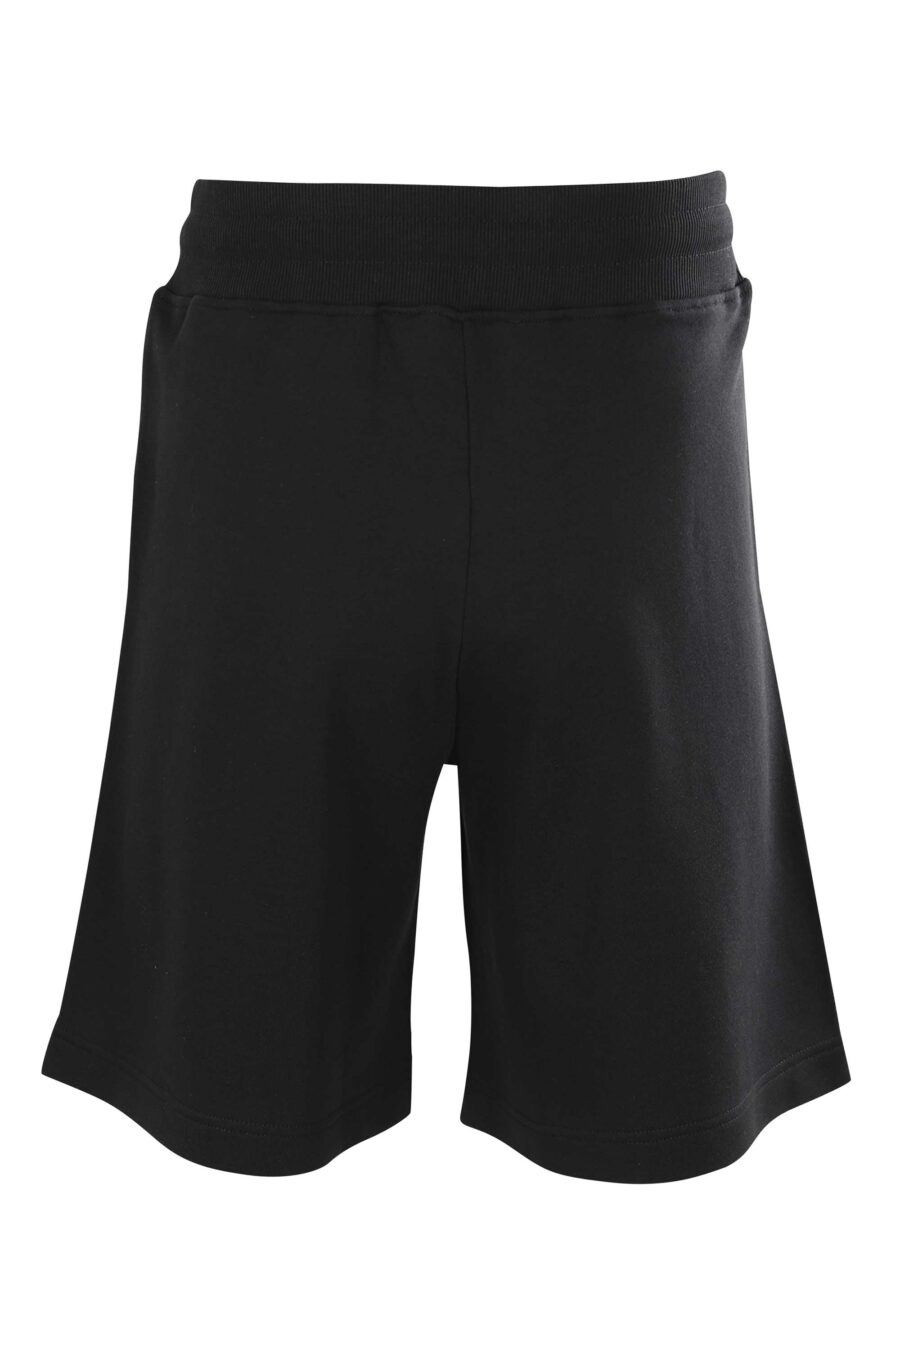 Pantalón de chándal corto negro con minilogo redondo - 8052019230420 3